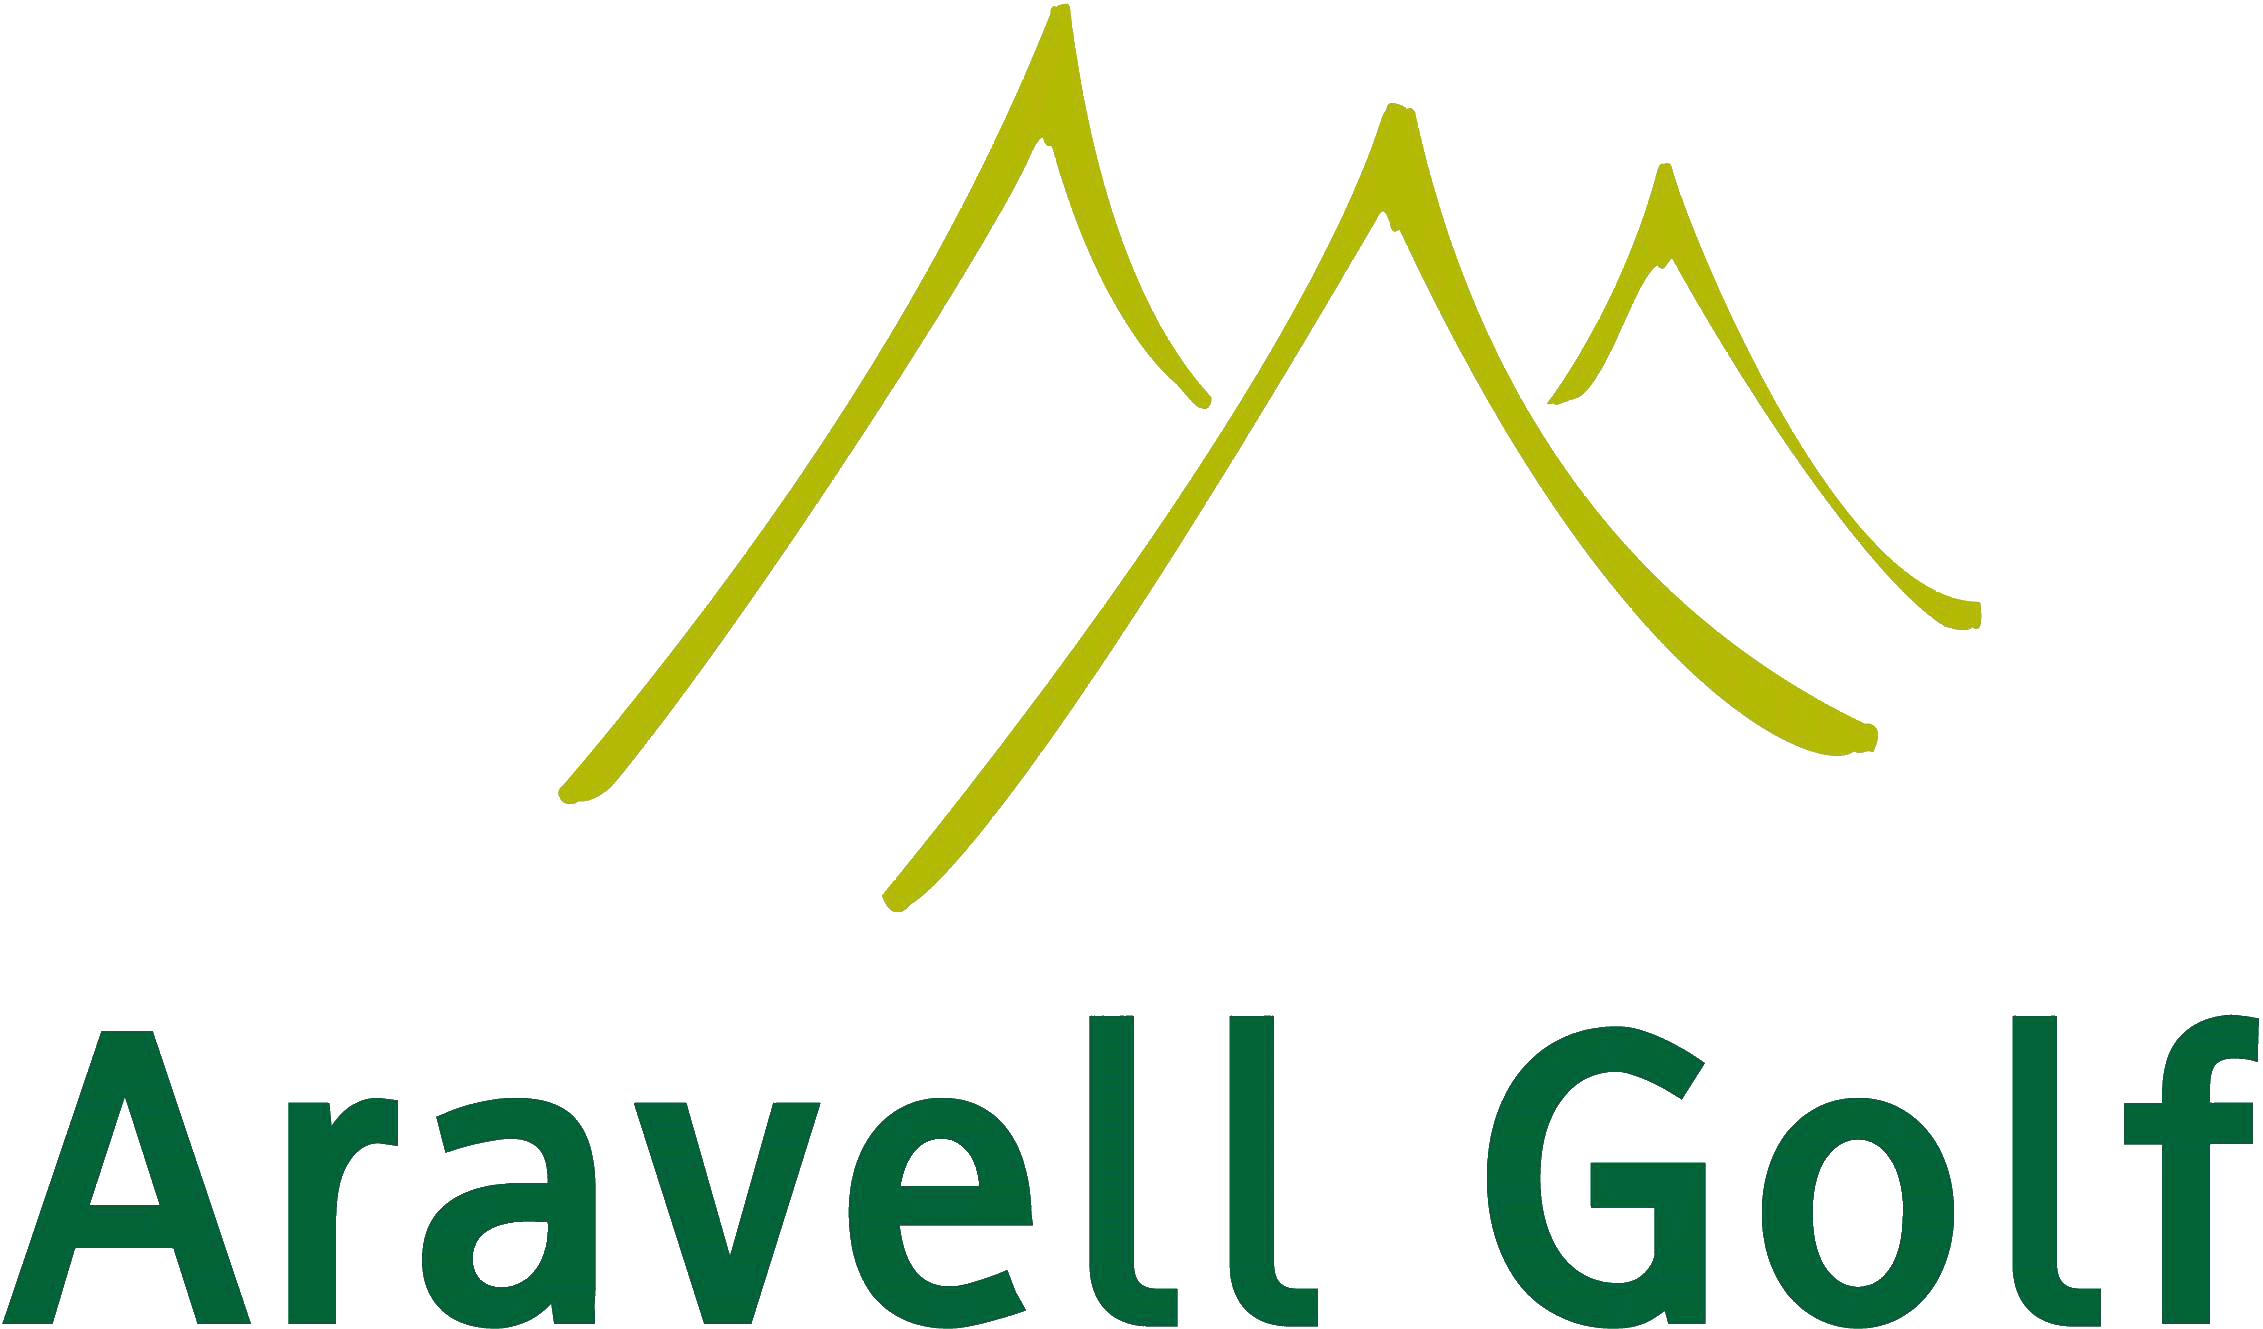 Aravell Golf